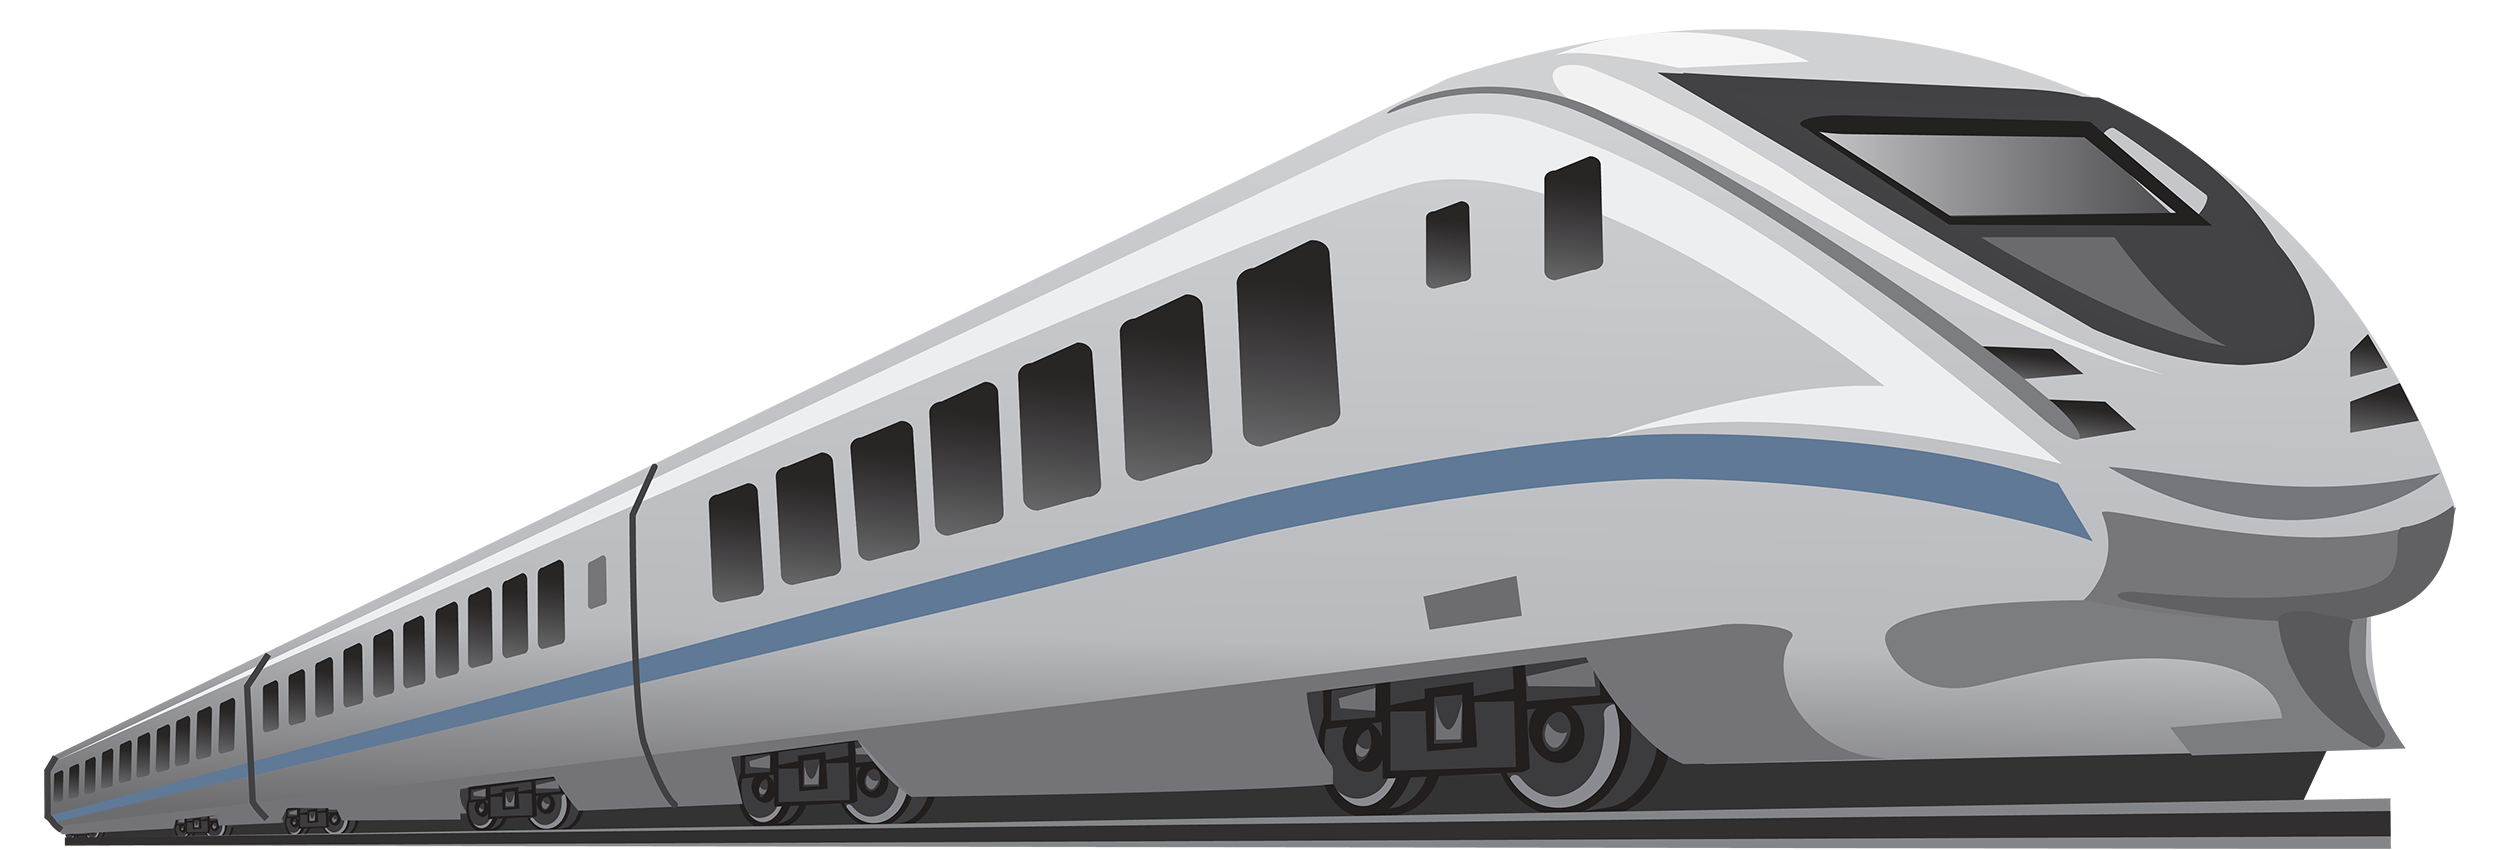 clipart train passenger train